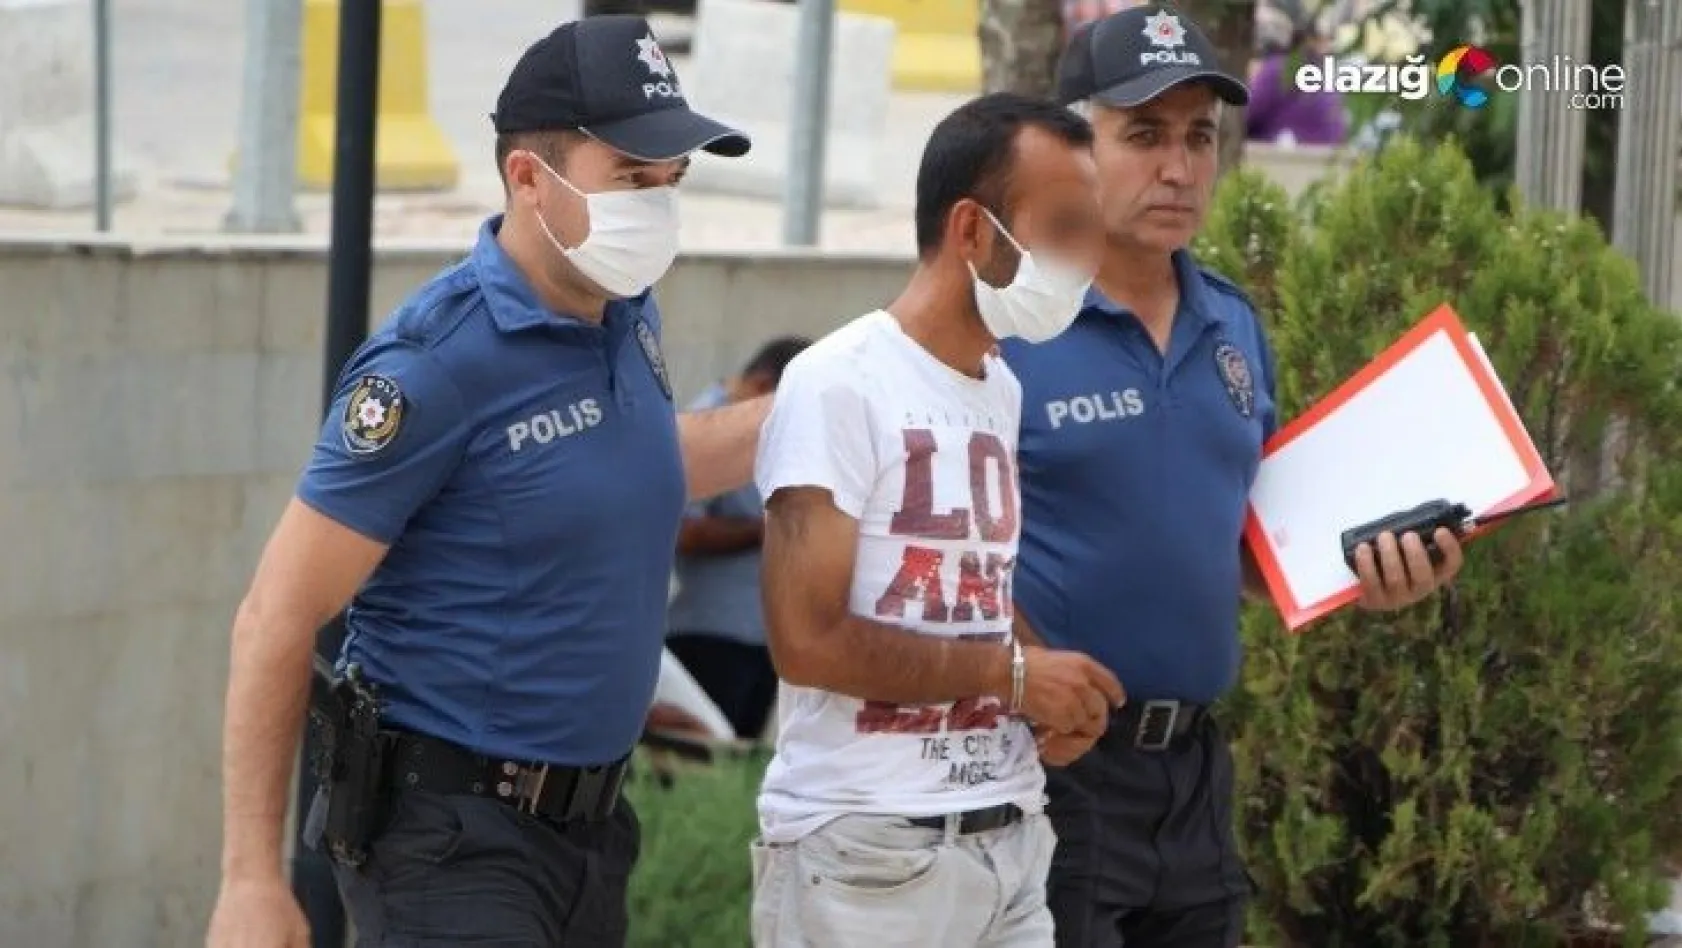 Elazığ'da 34 suç kaydı bulunan hırsızlık şüphelisi yakalandı